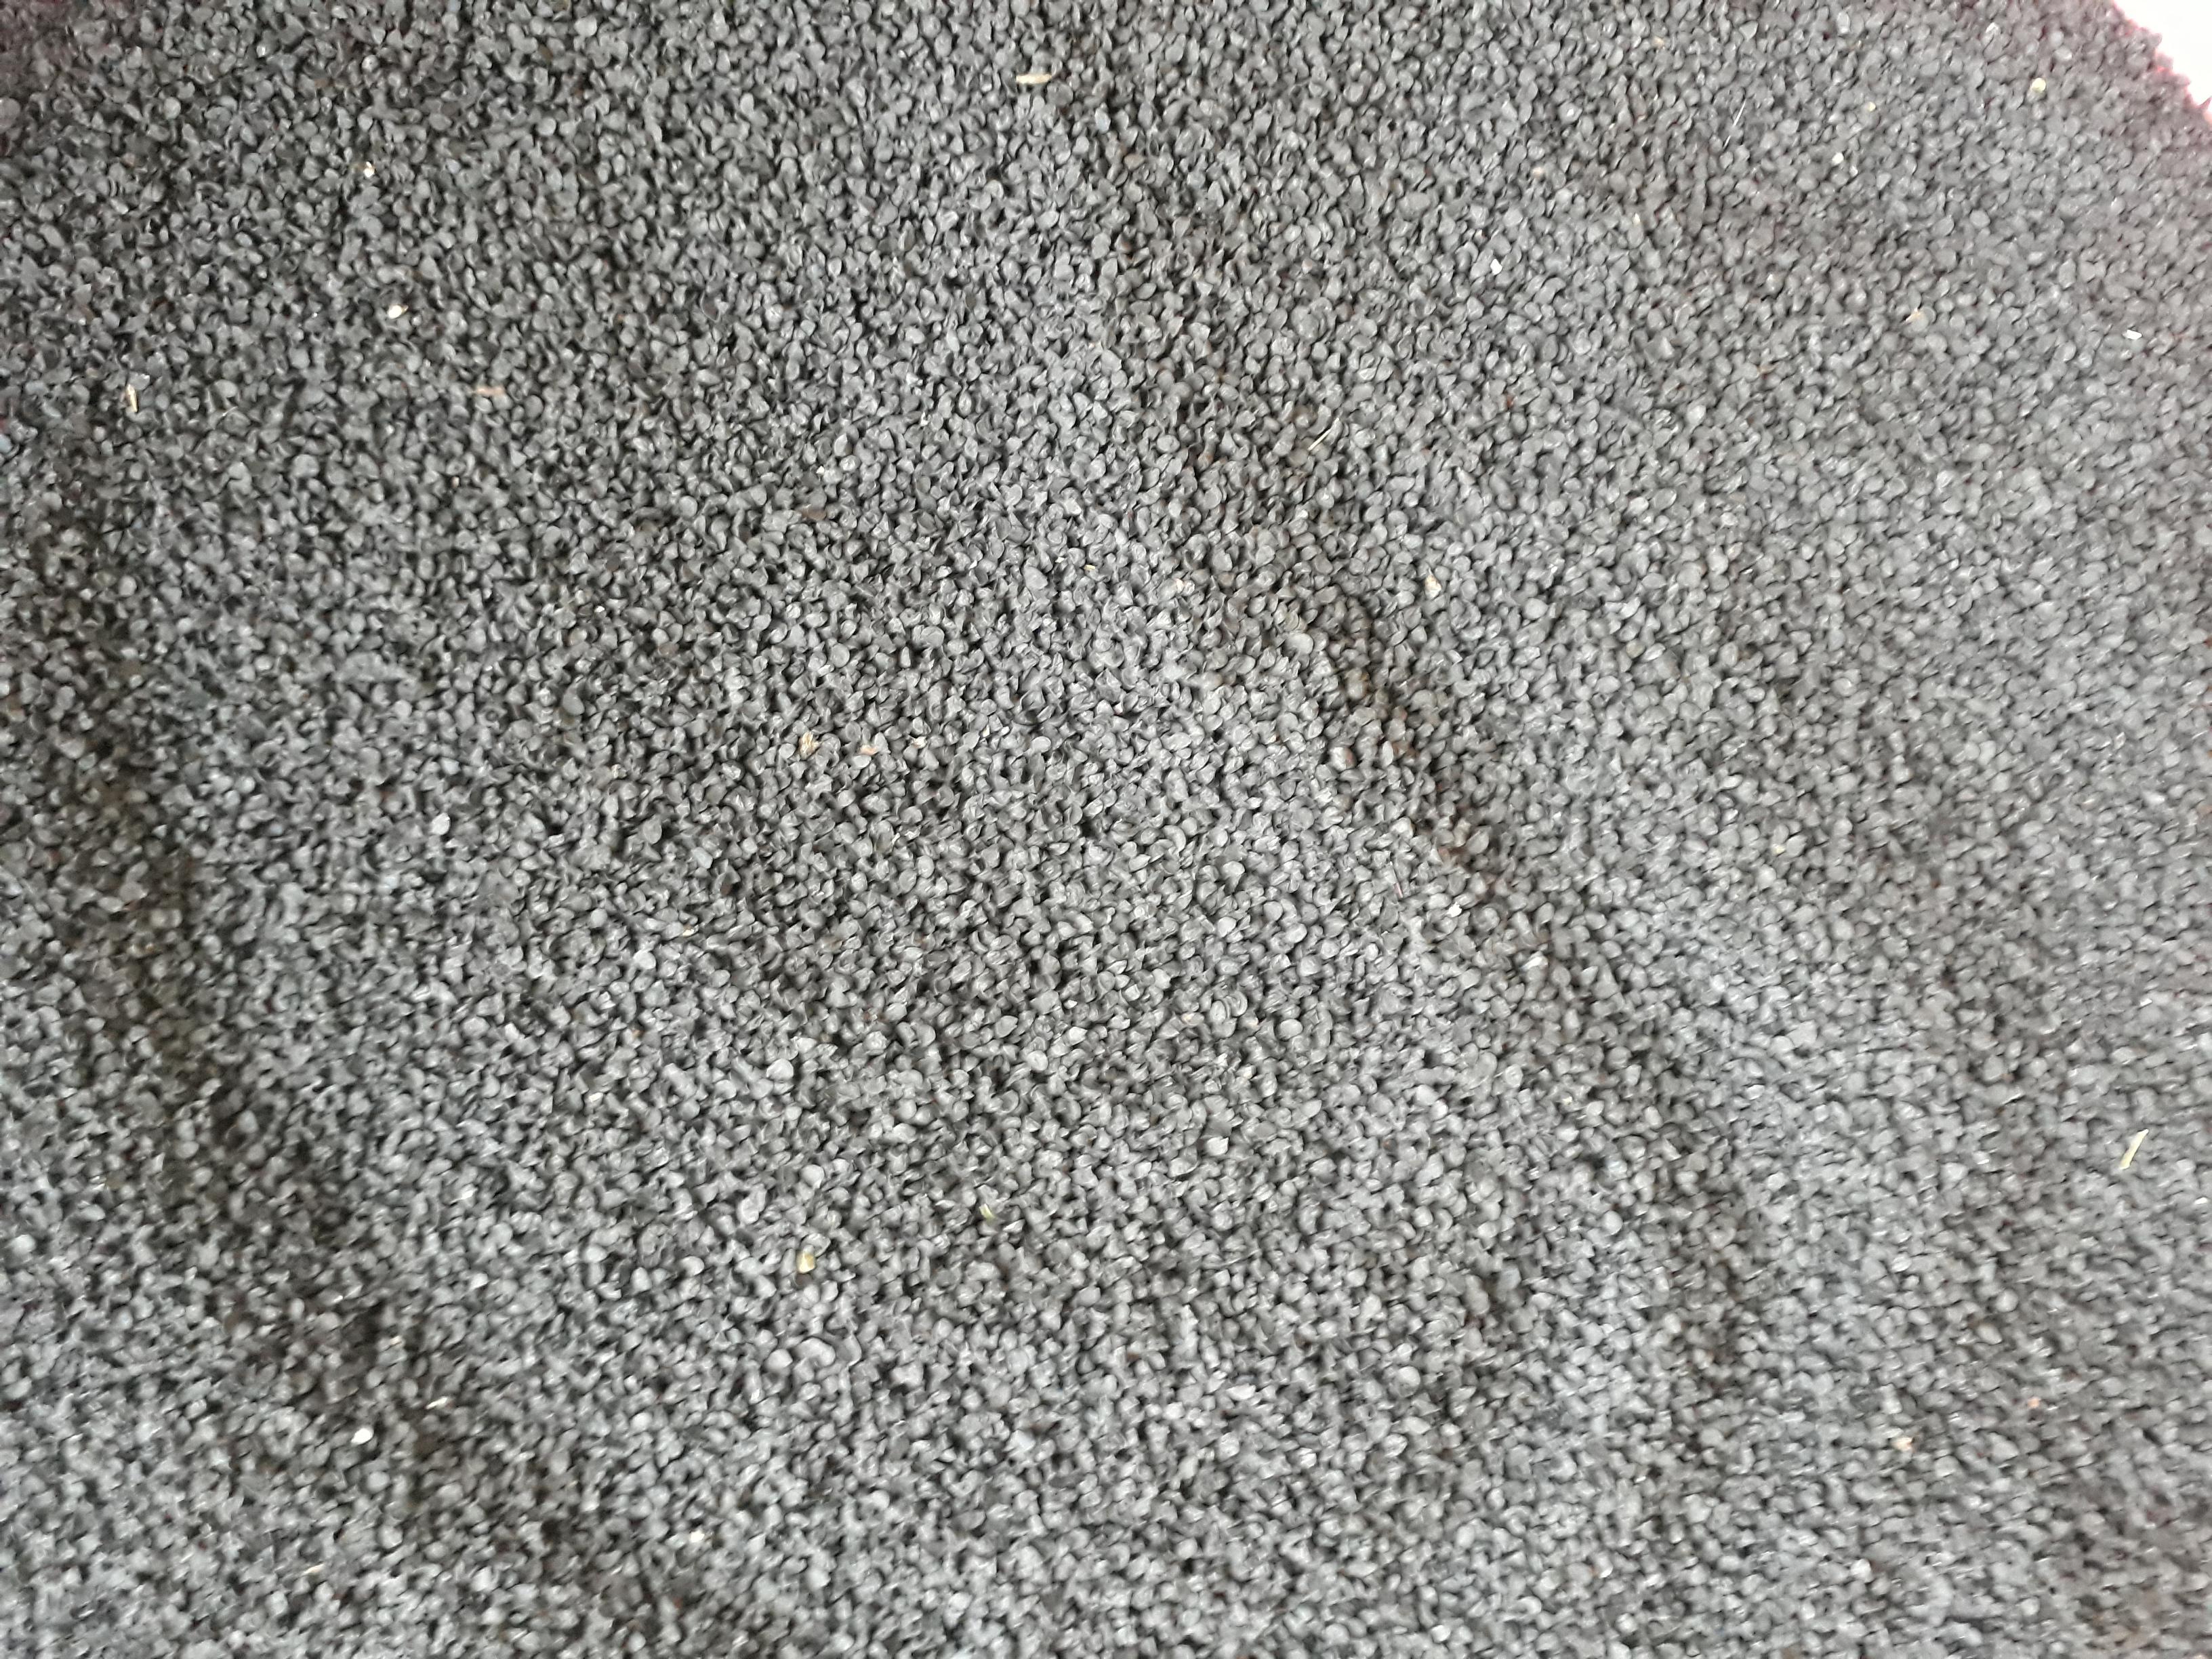 Kuru Soğan tohumu - Üretici Okan Bahadir 500 tl fiyat ile 200 kilogram çorum çeşidi kuru soğan tohumu satmak istiyor